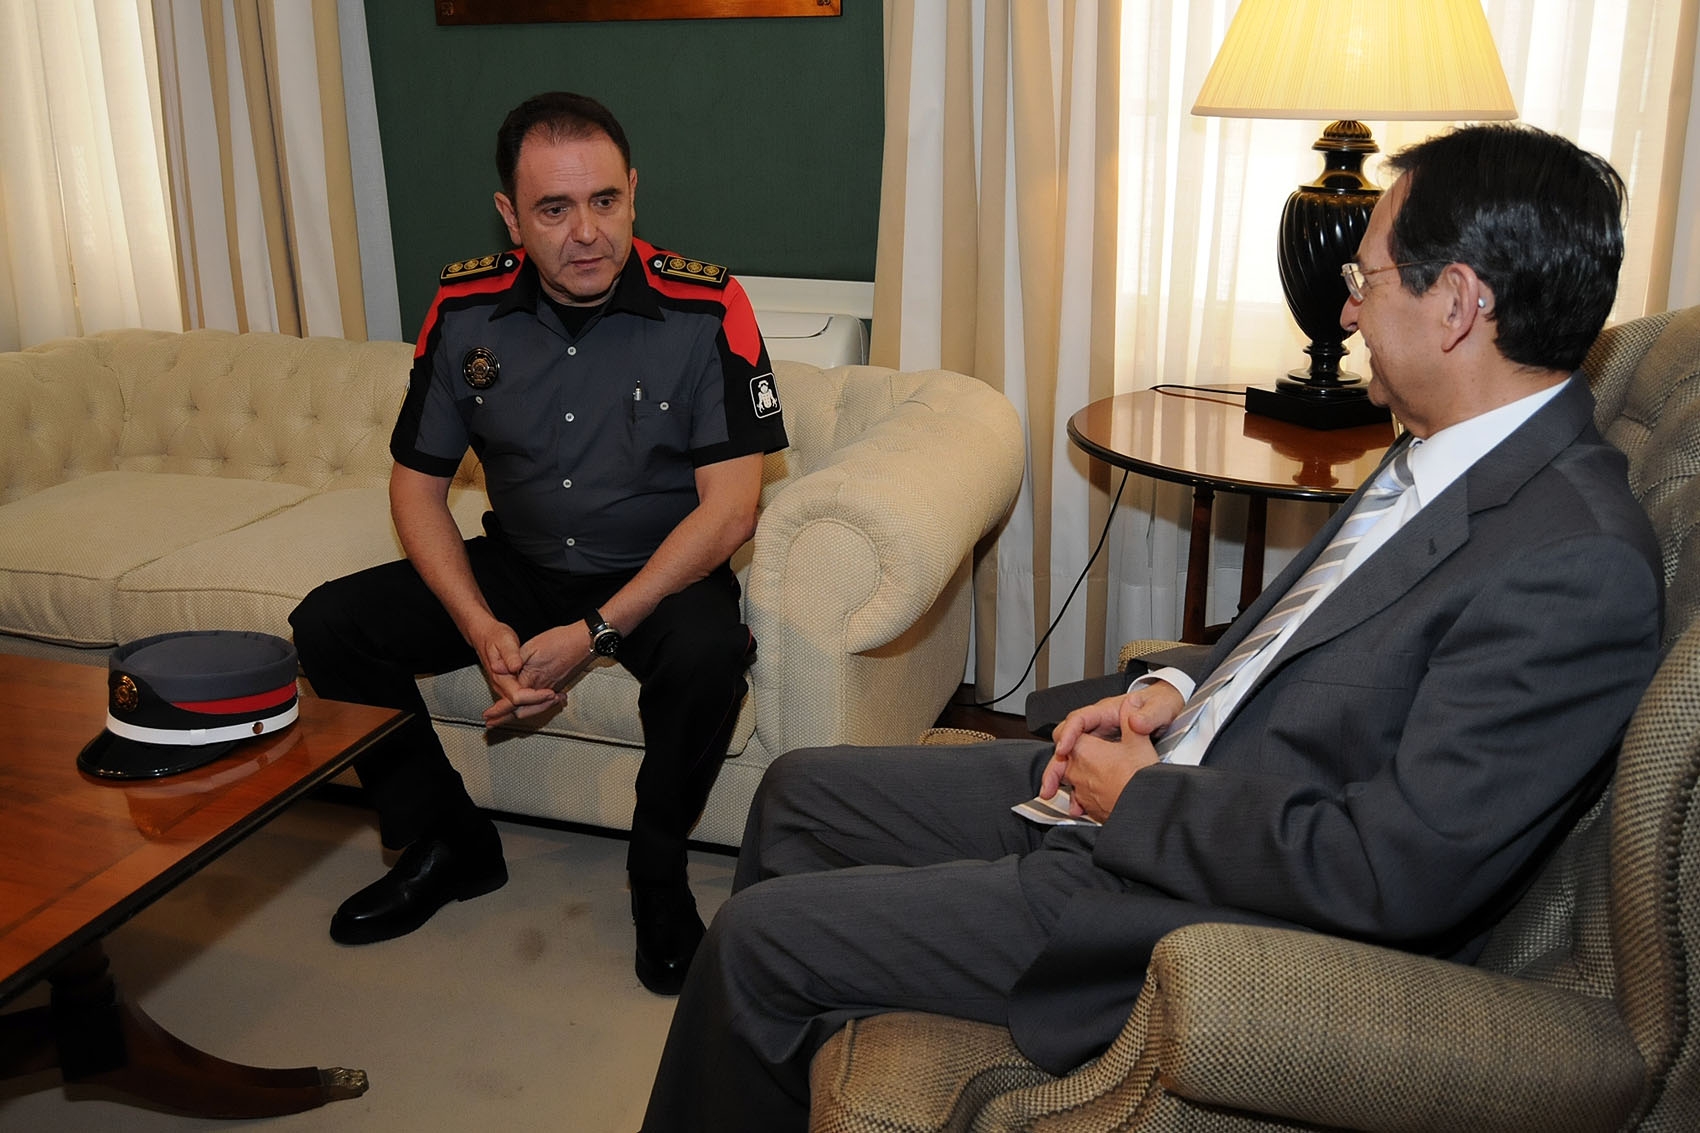 Visita del Jefe de la Policía Canaria